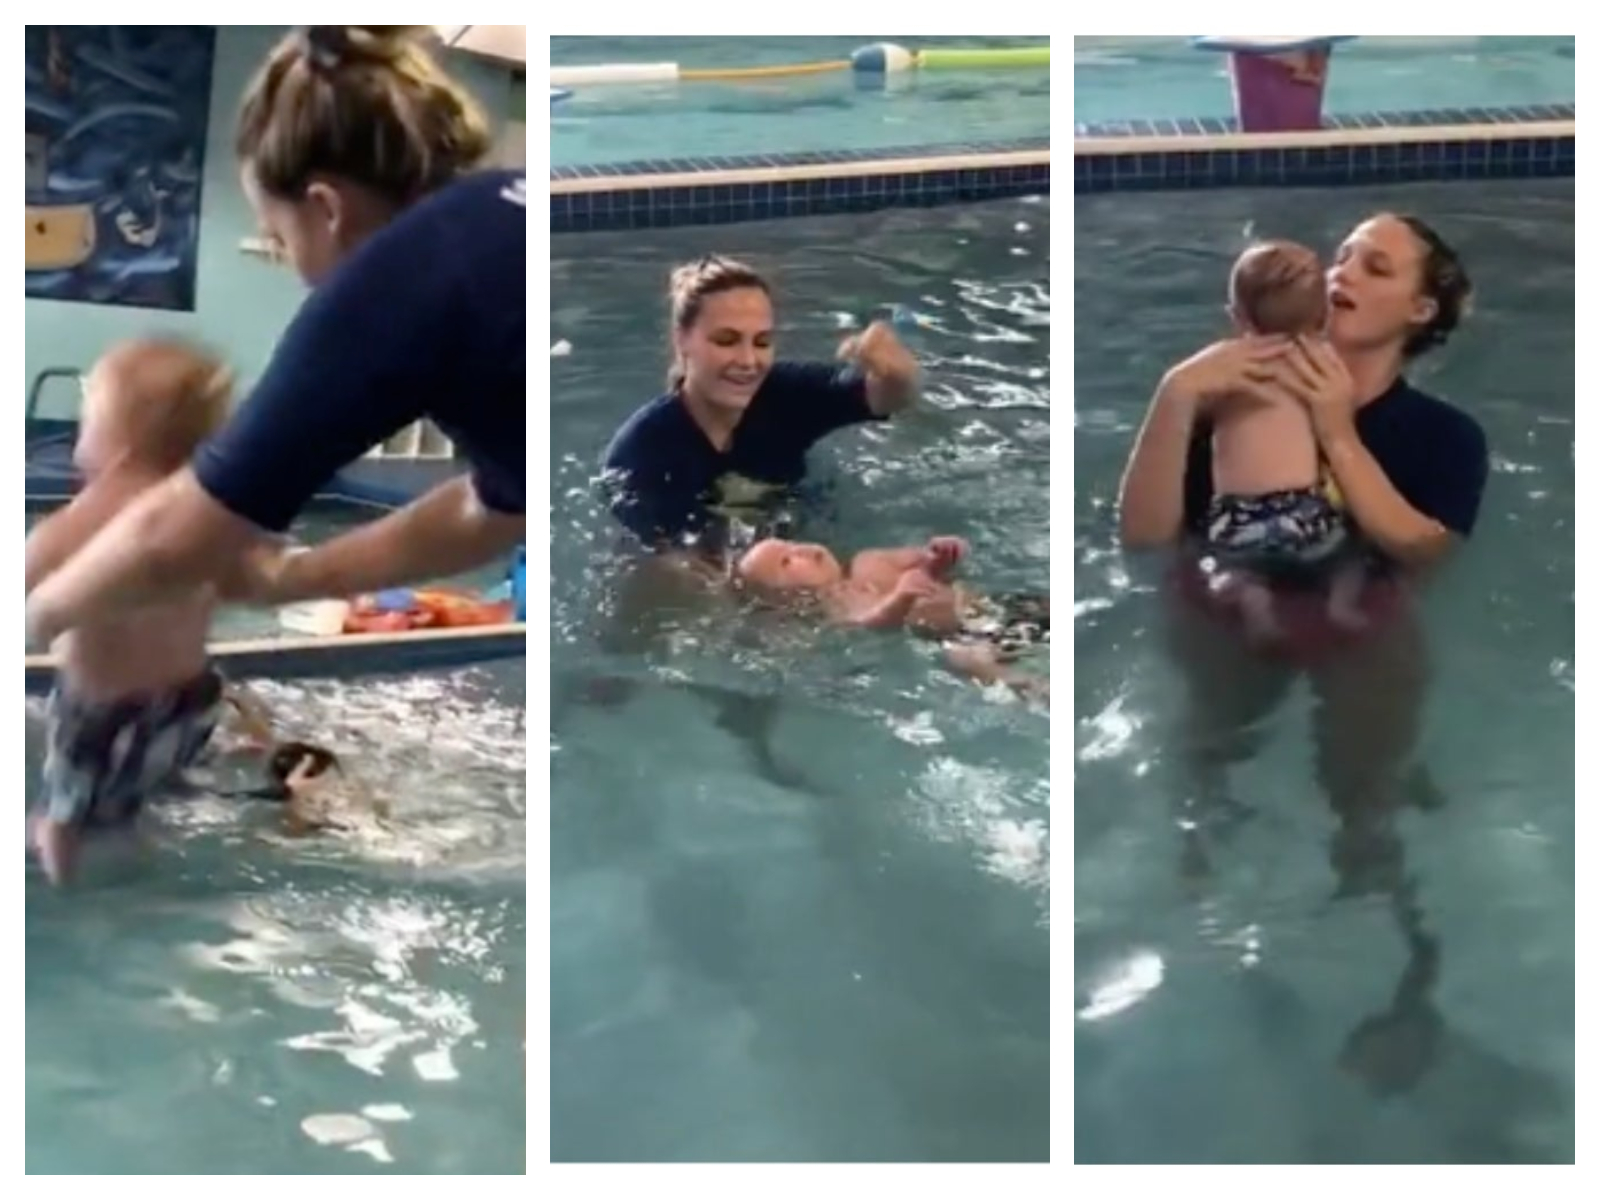 La surprenante vidéo d'un bébé jeté dans une piscine fait polémique